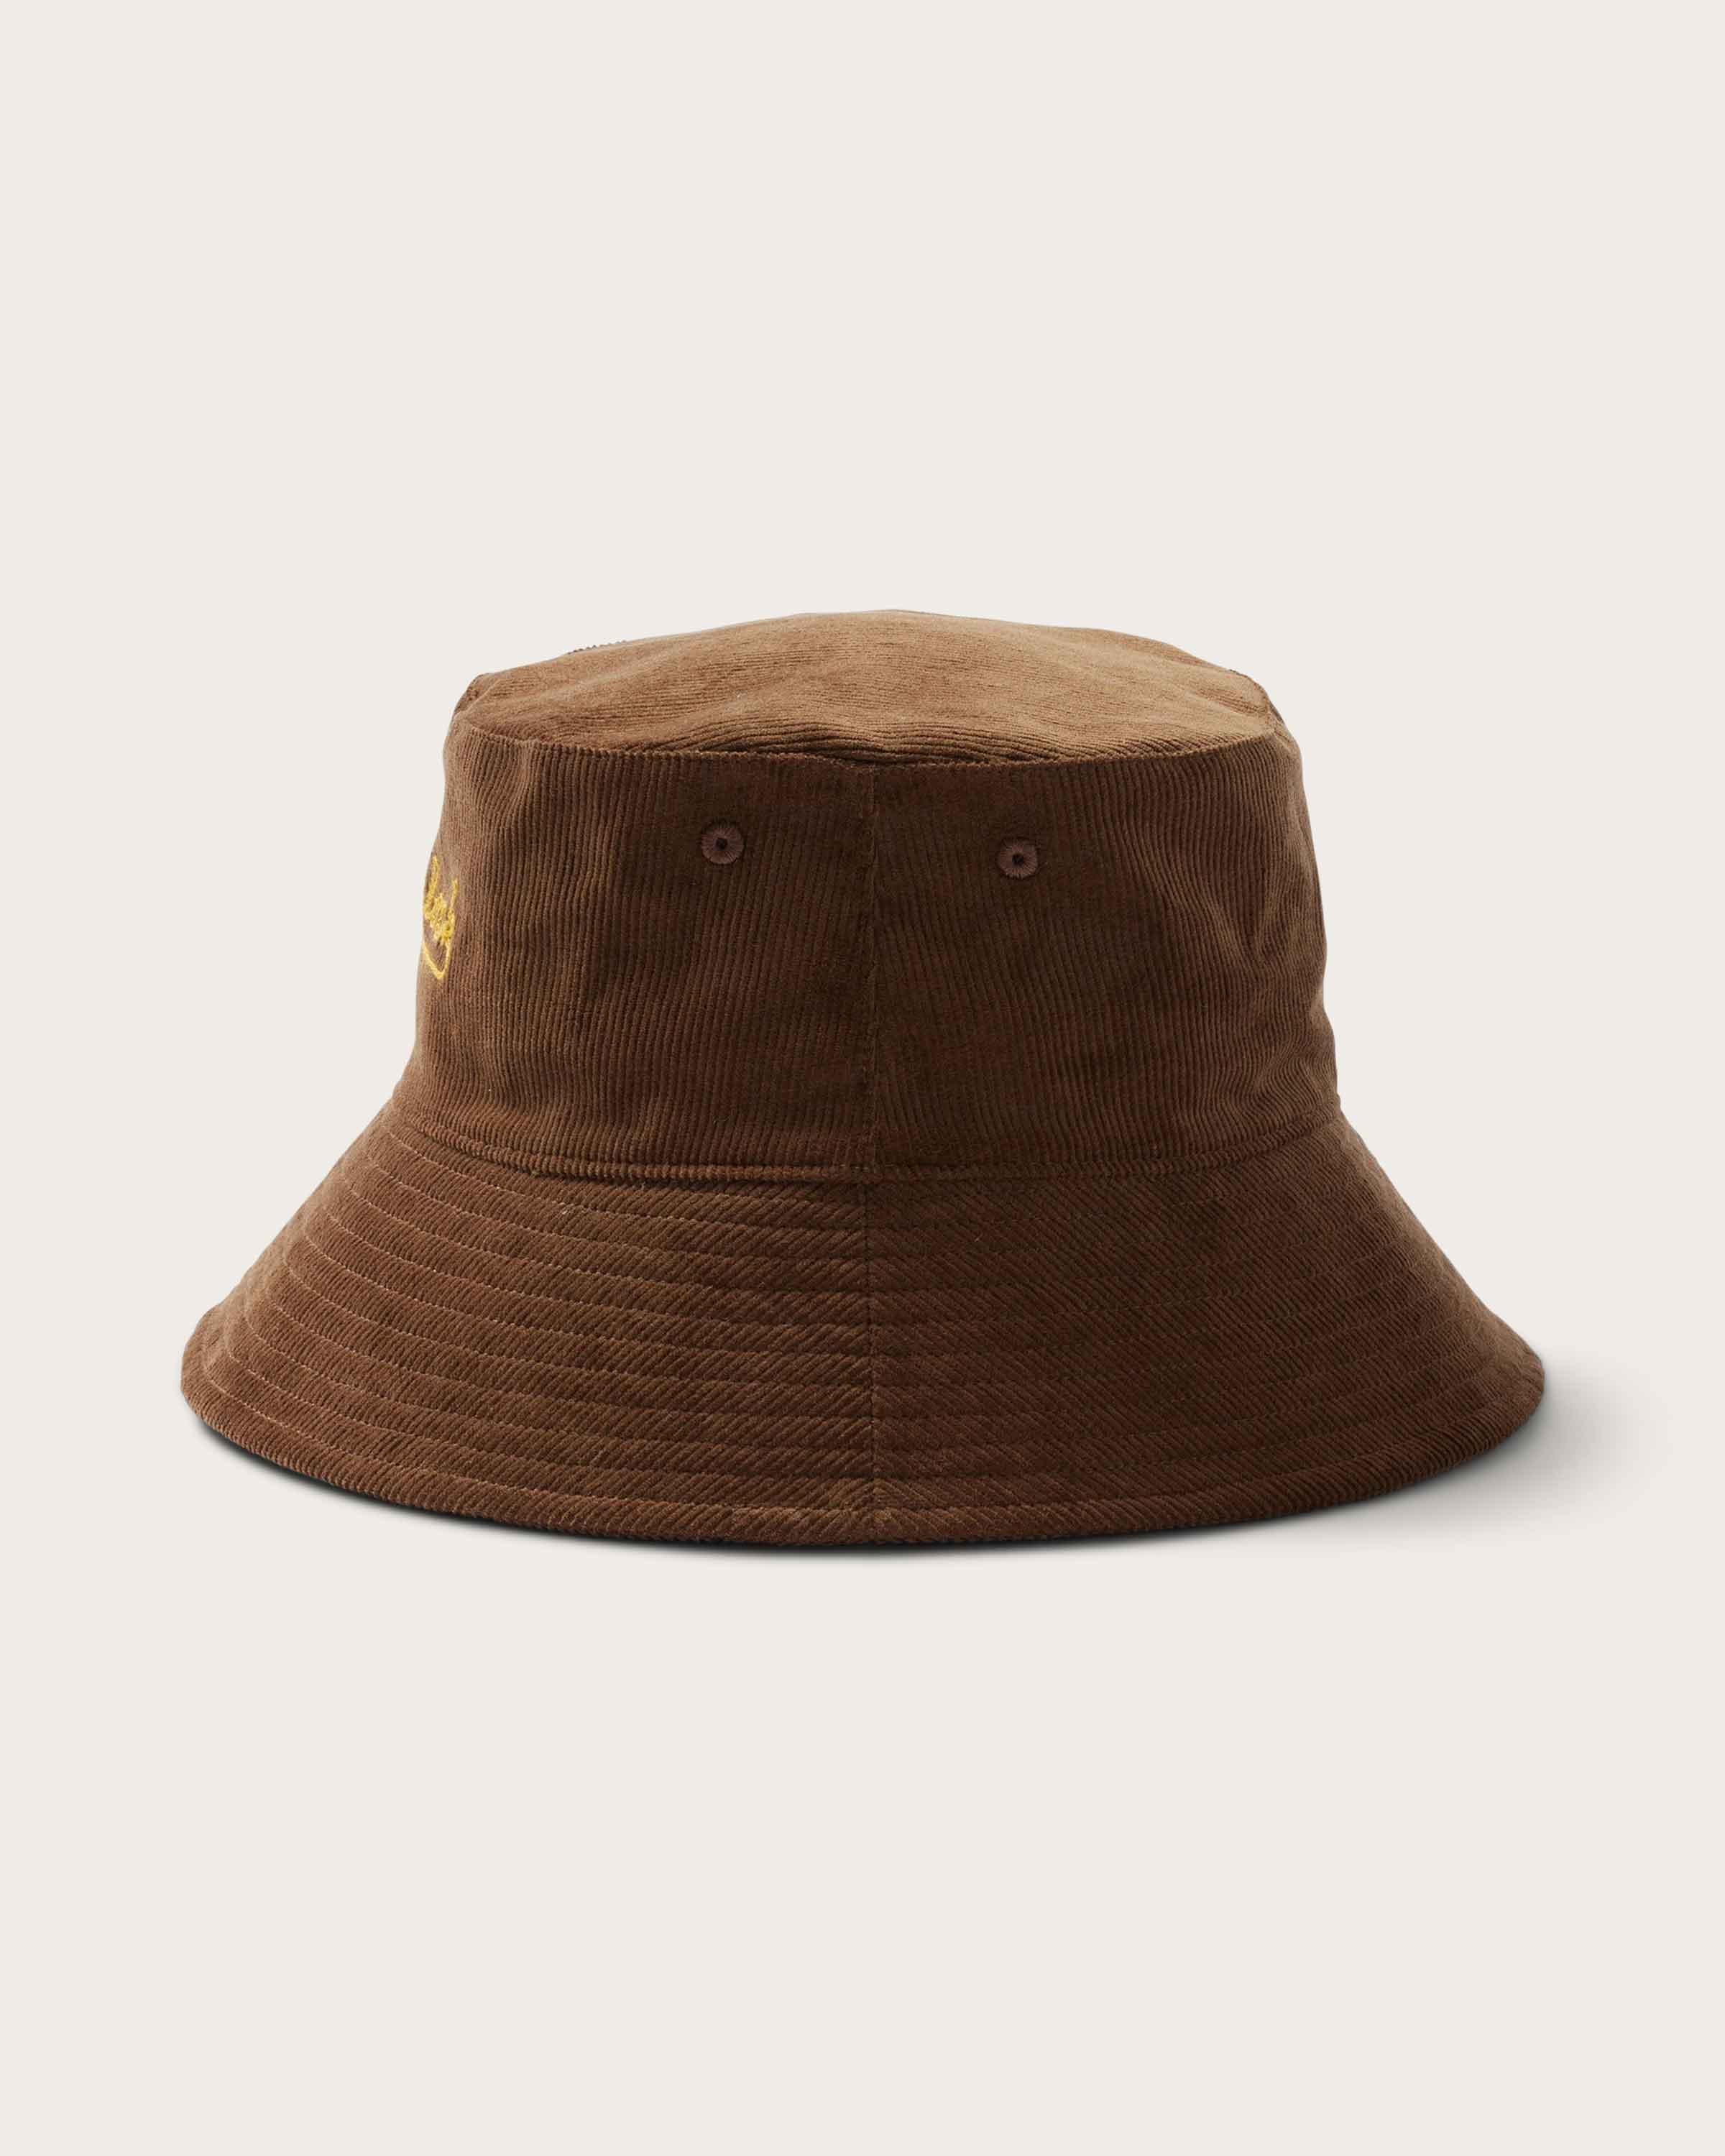 Newport Bucket in Mocha - undefined - Hemlock Hat Co. Buckets